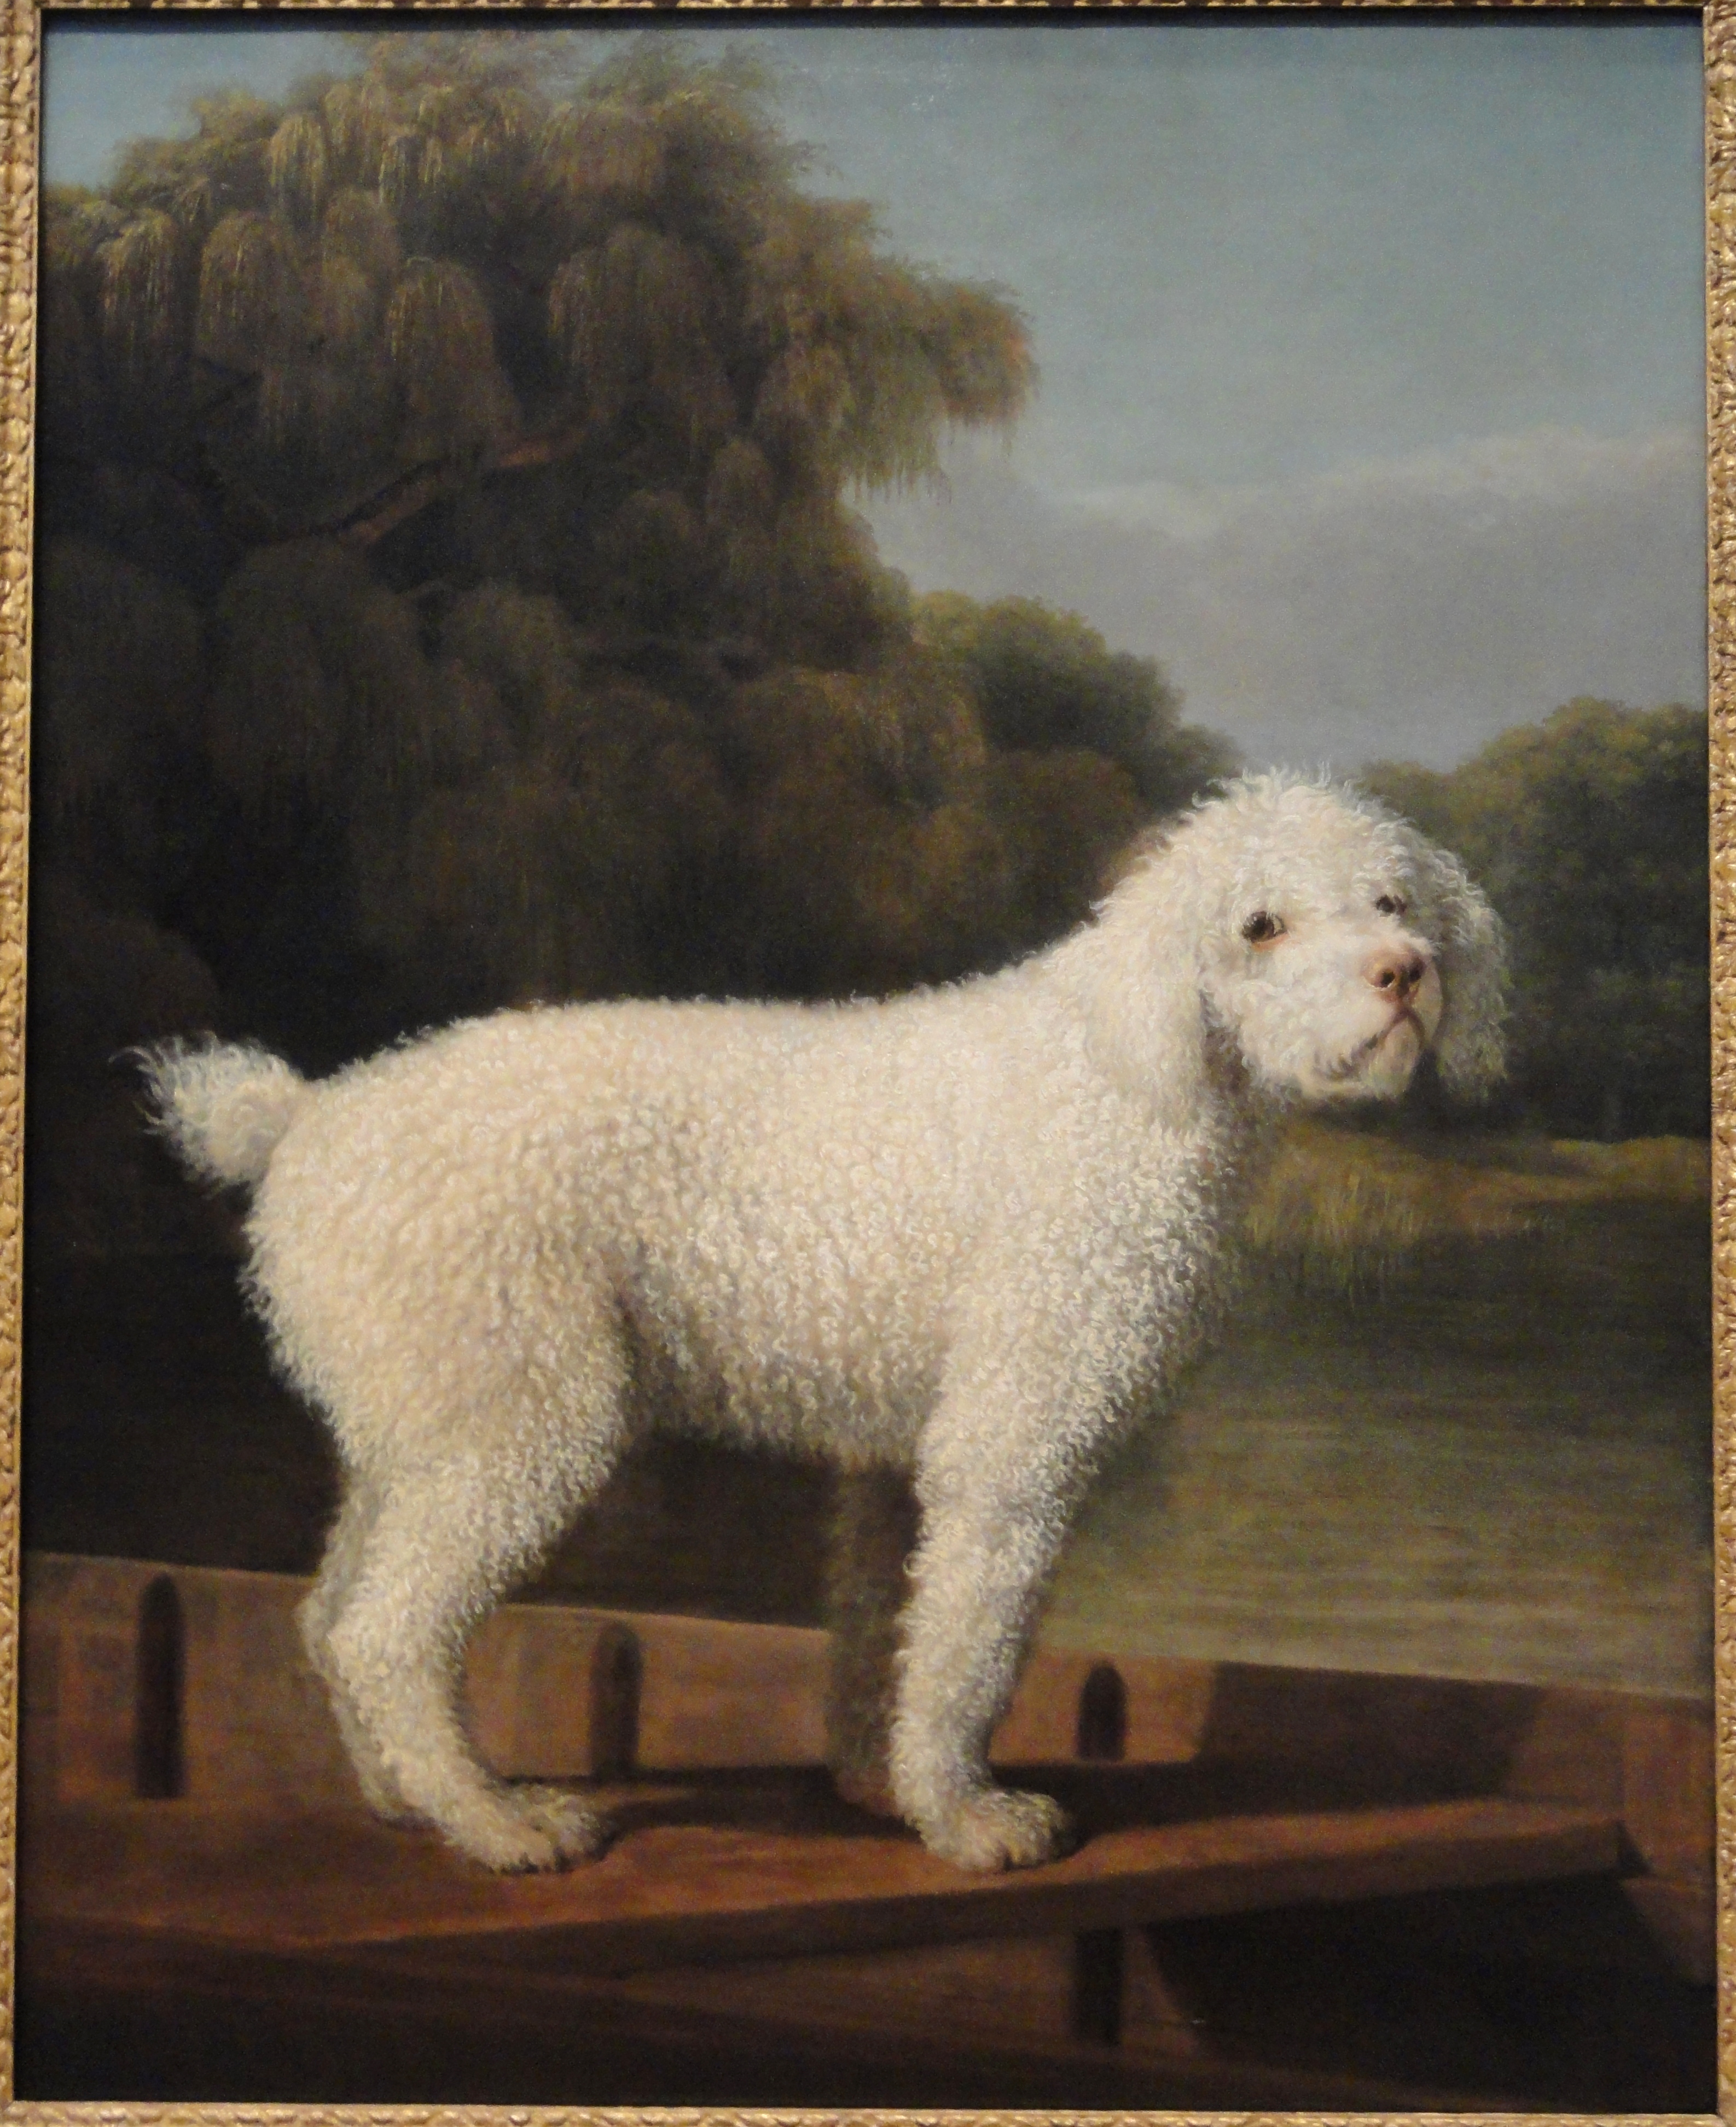 在船上的小白狗 by George Stubbs - c. 1780 - 50 x 39 in 